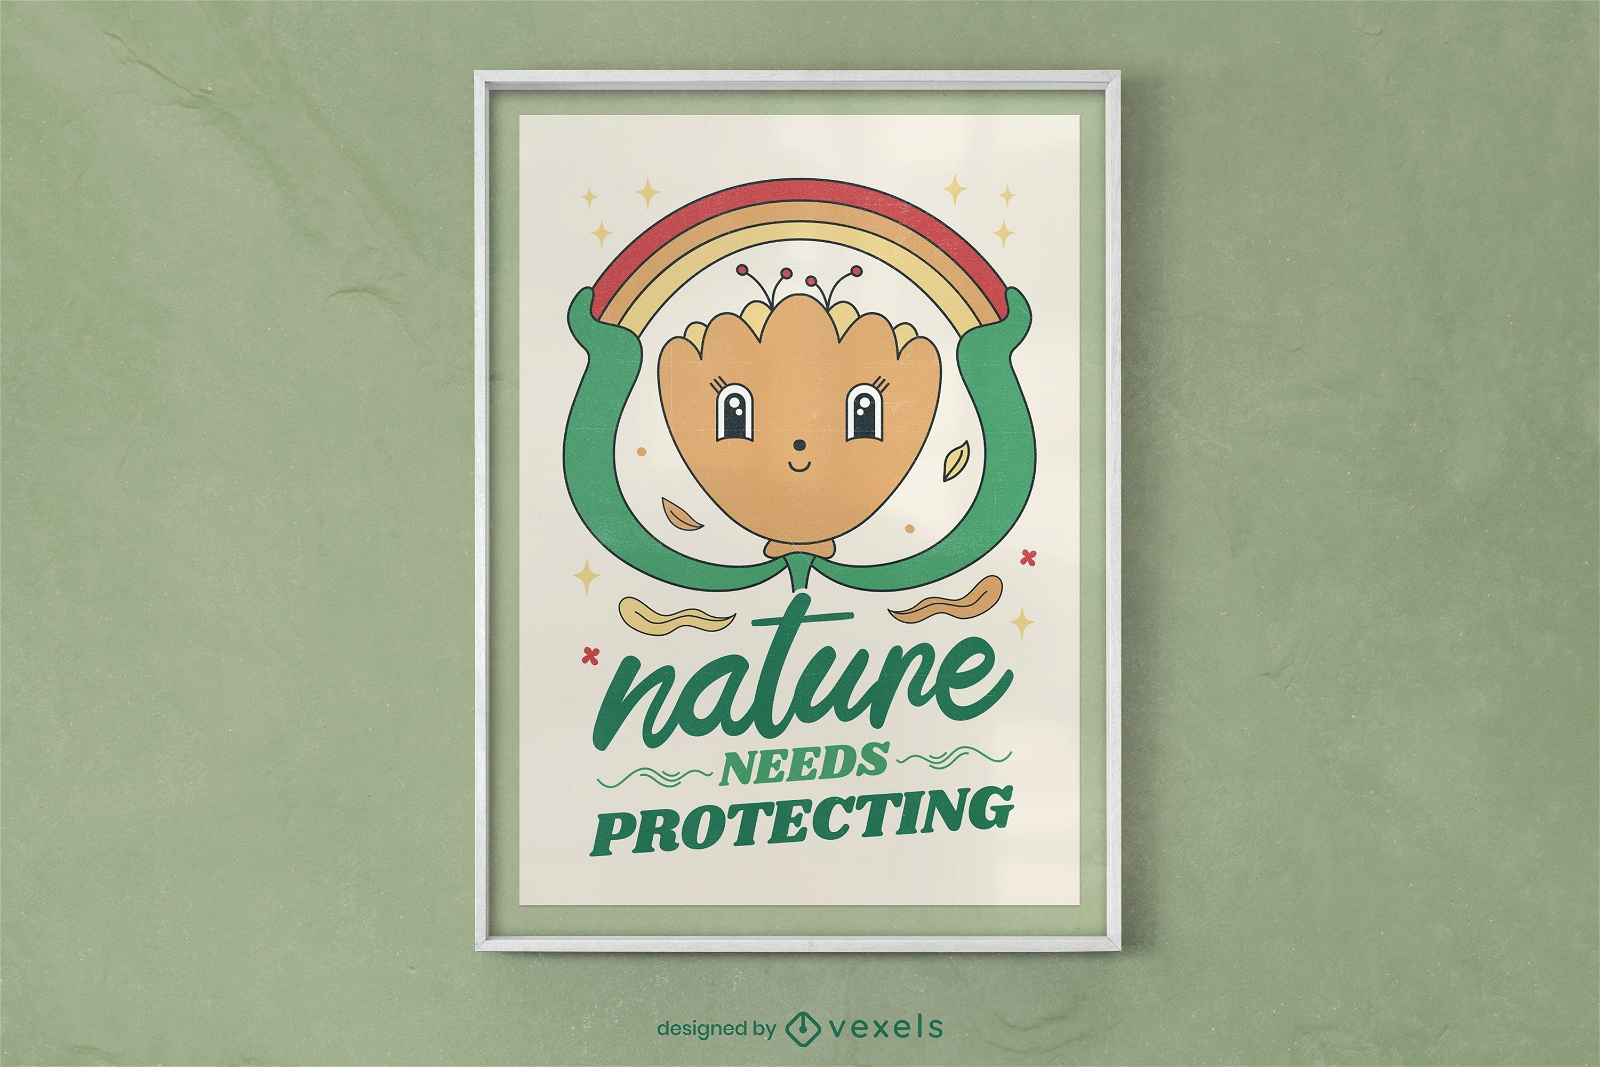 Die Natur braucht schützende Plakatgestaltung